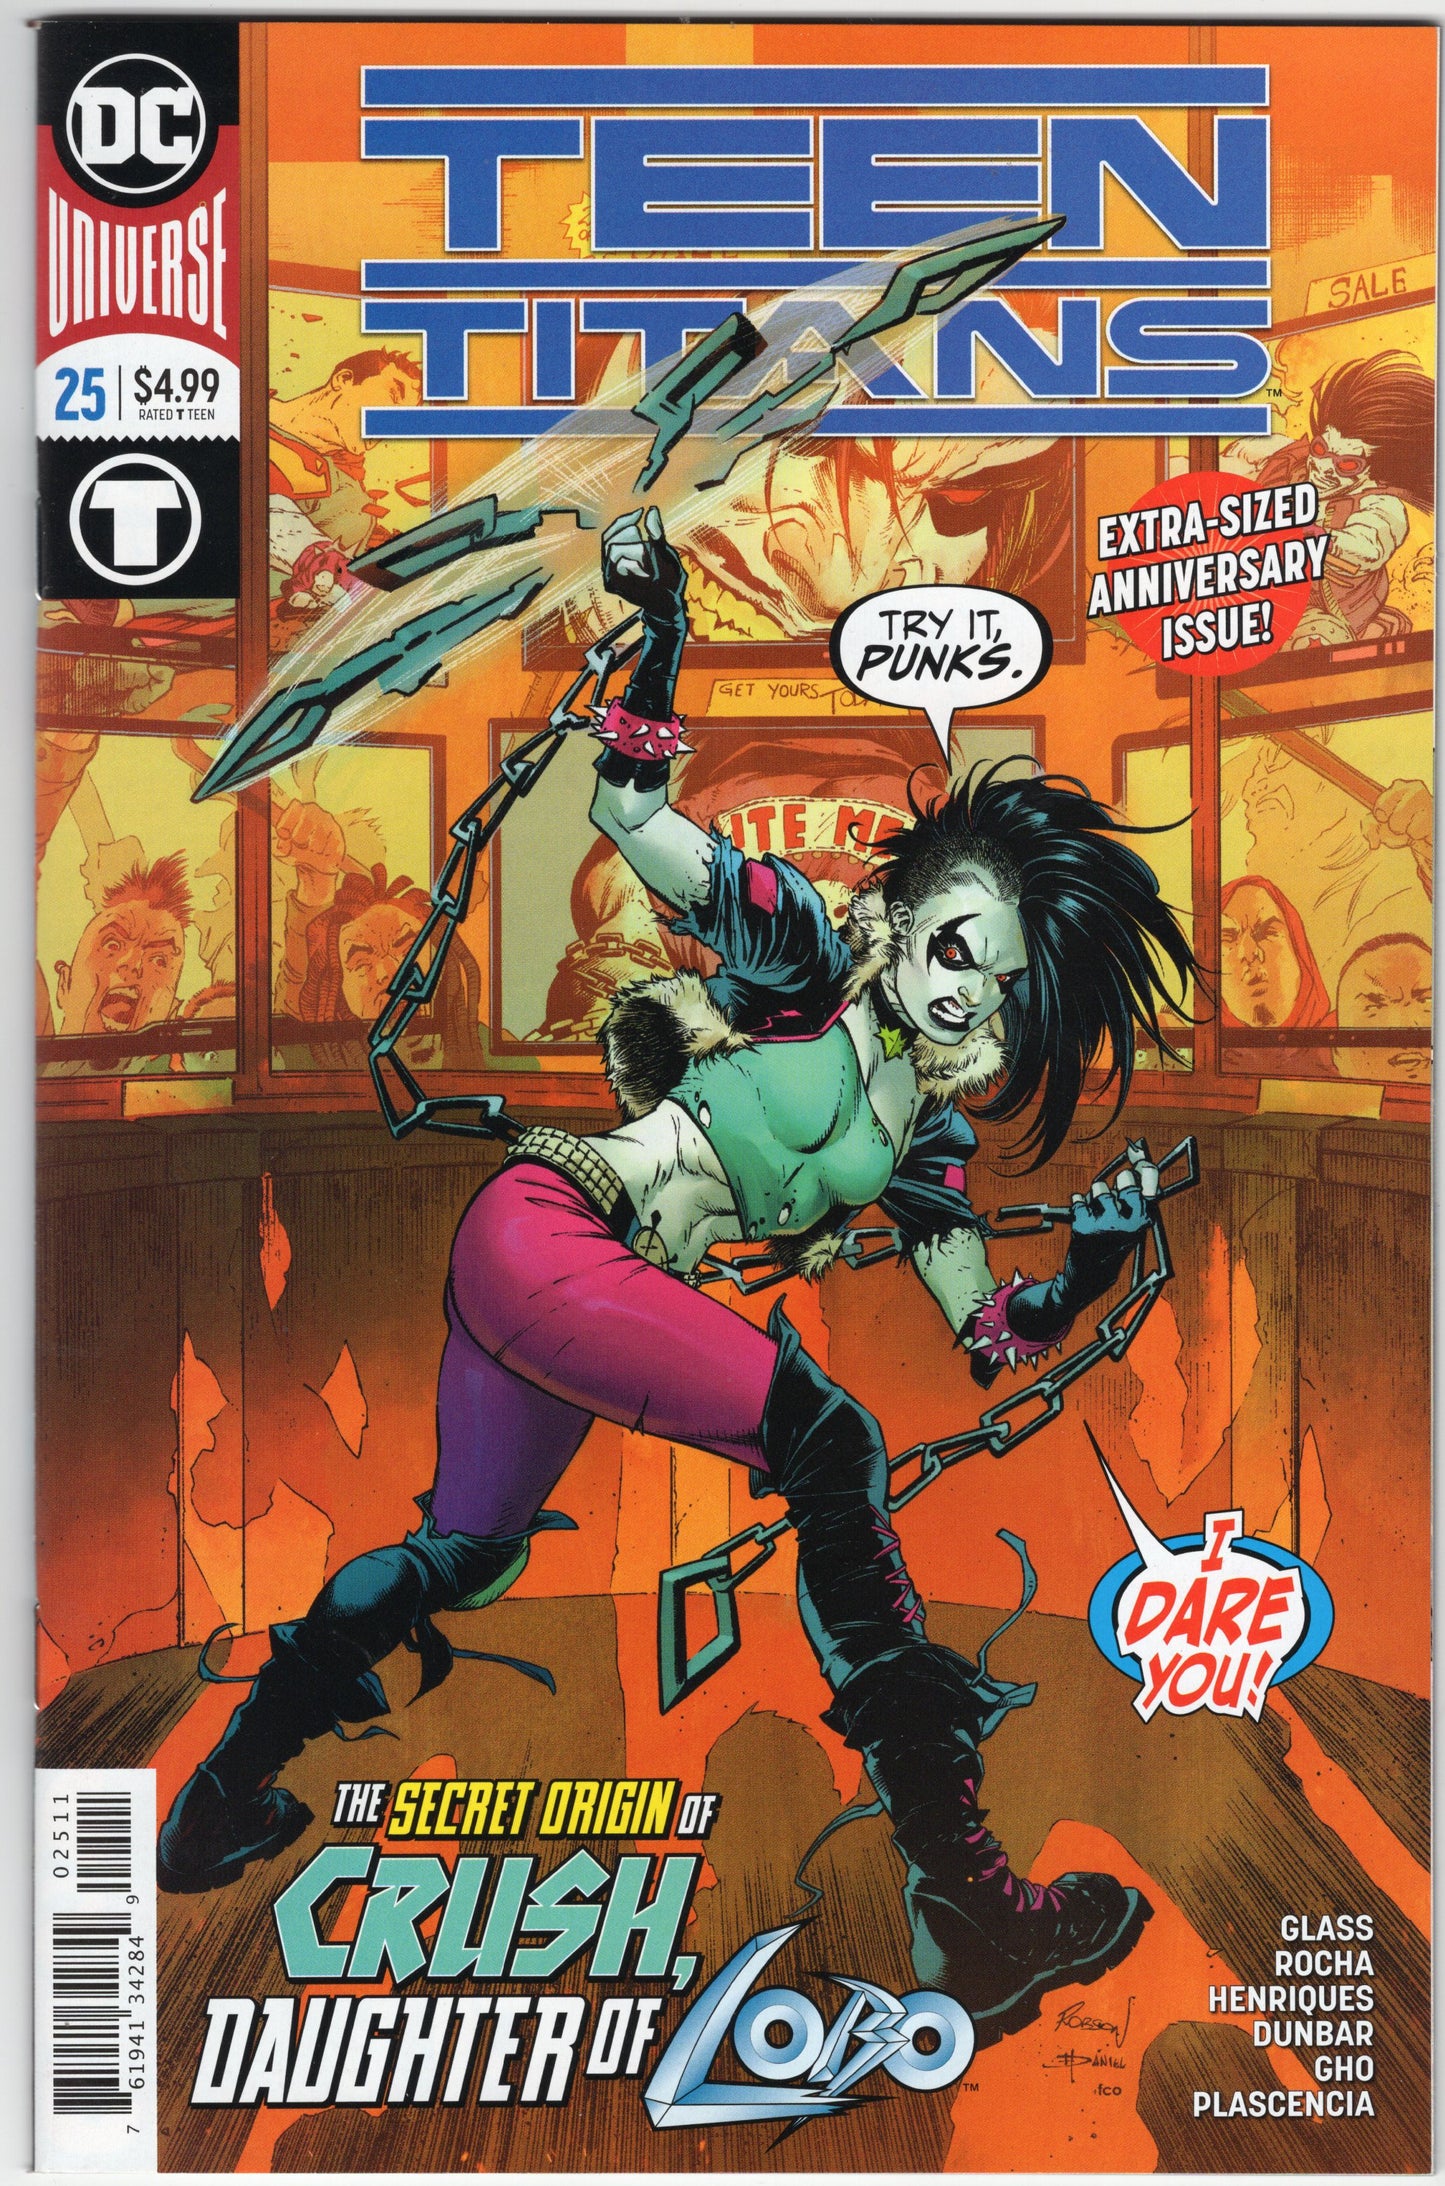 Teen Titans - Issue #25 "The Secret Origin of Crush Daughter of Lobo" (Feb. 2019 - DC Comics) NM